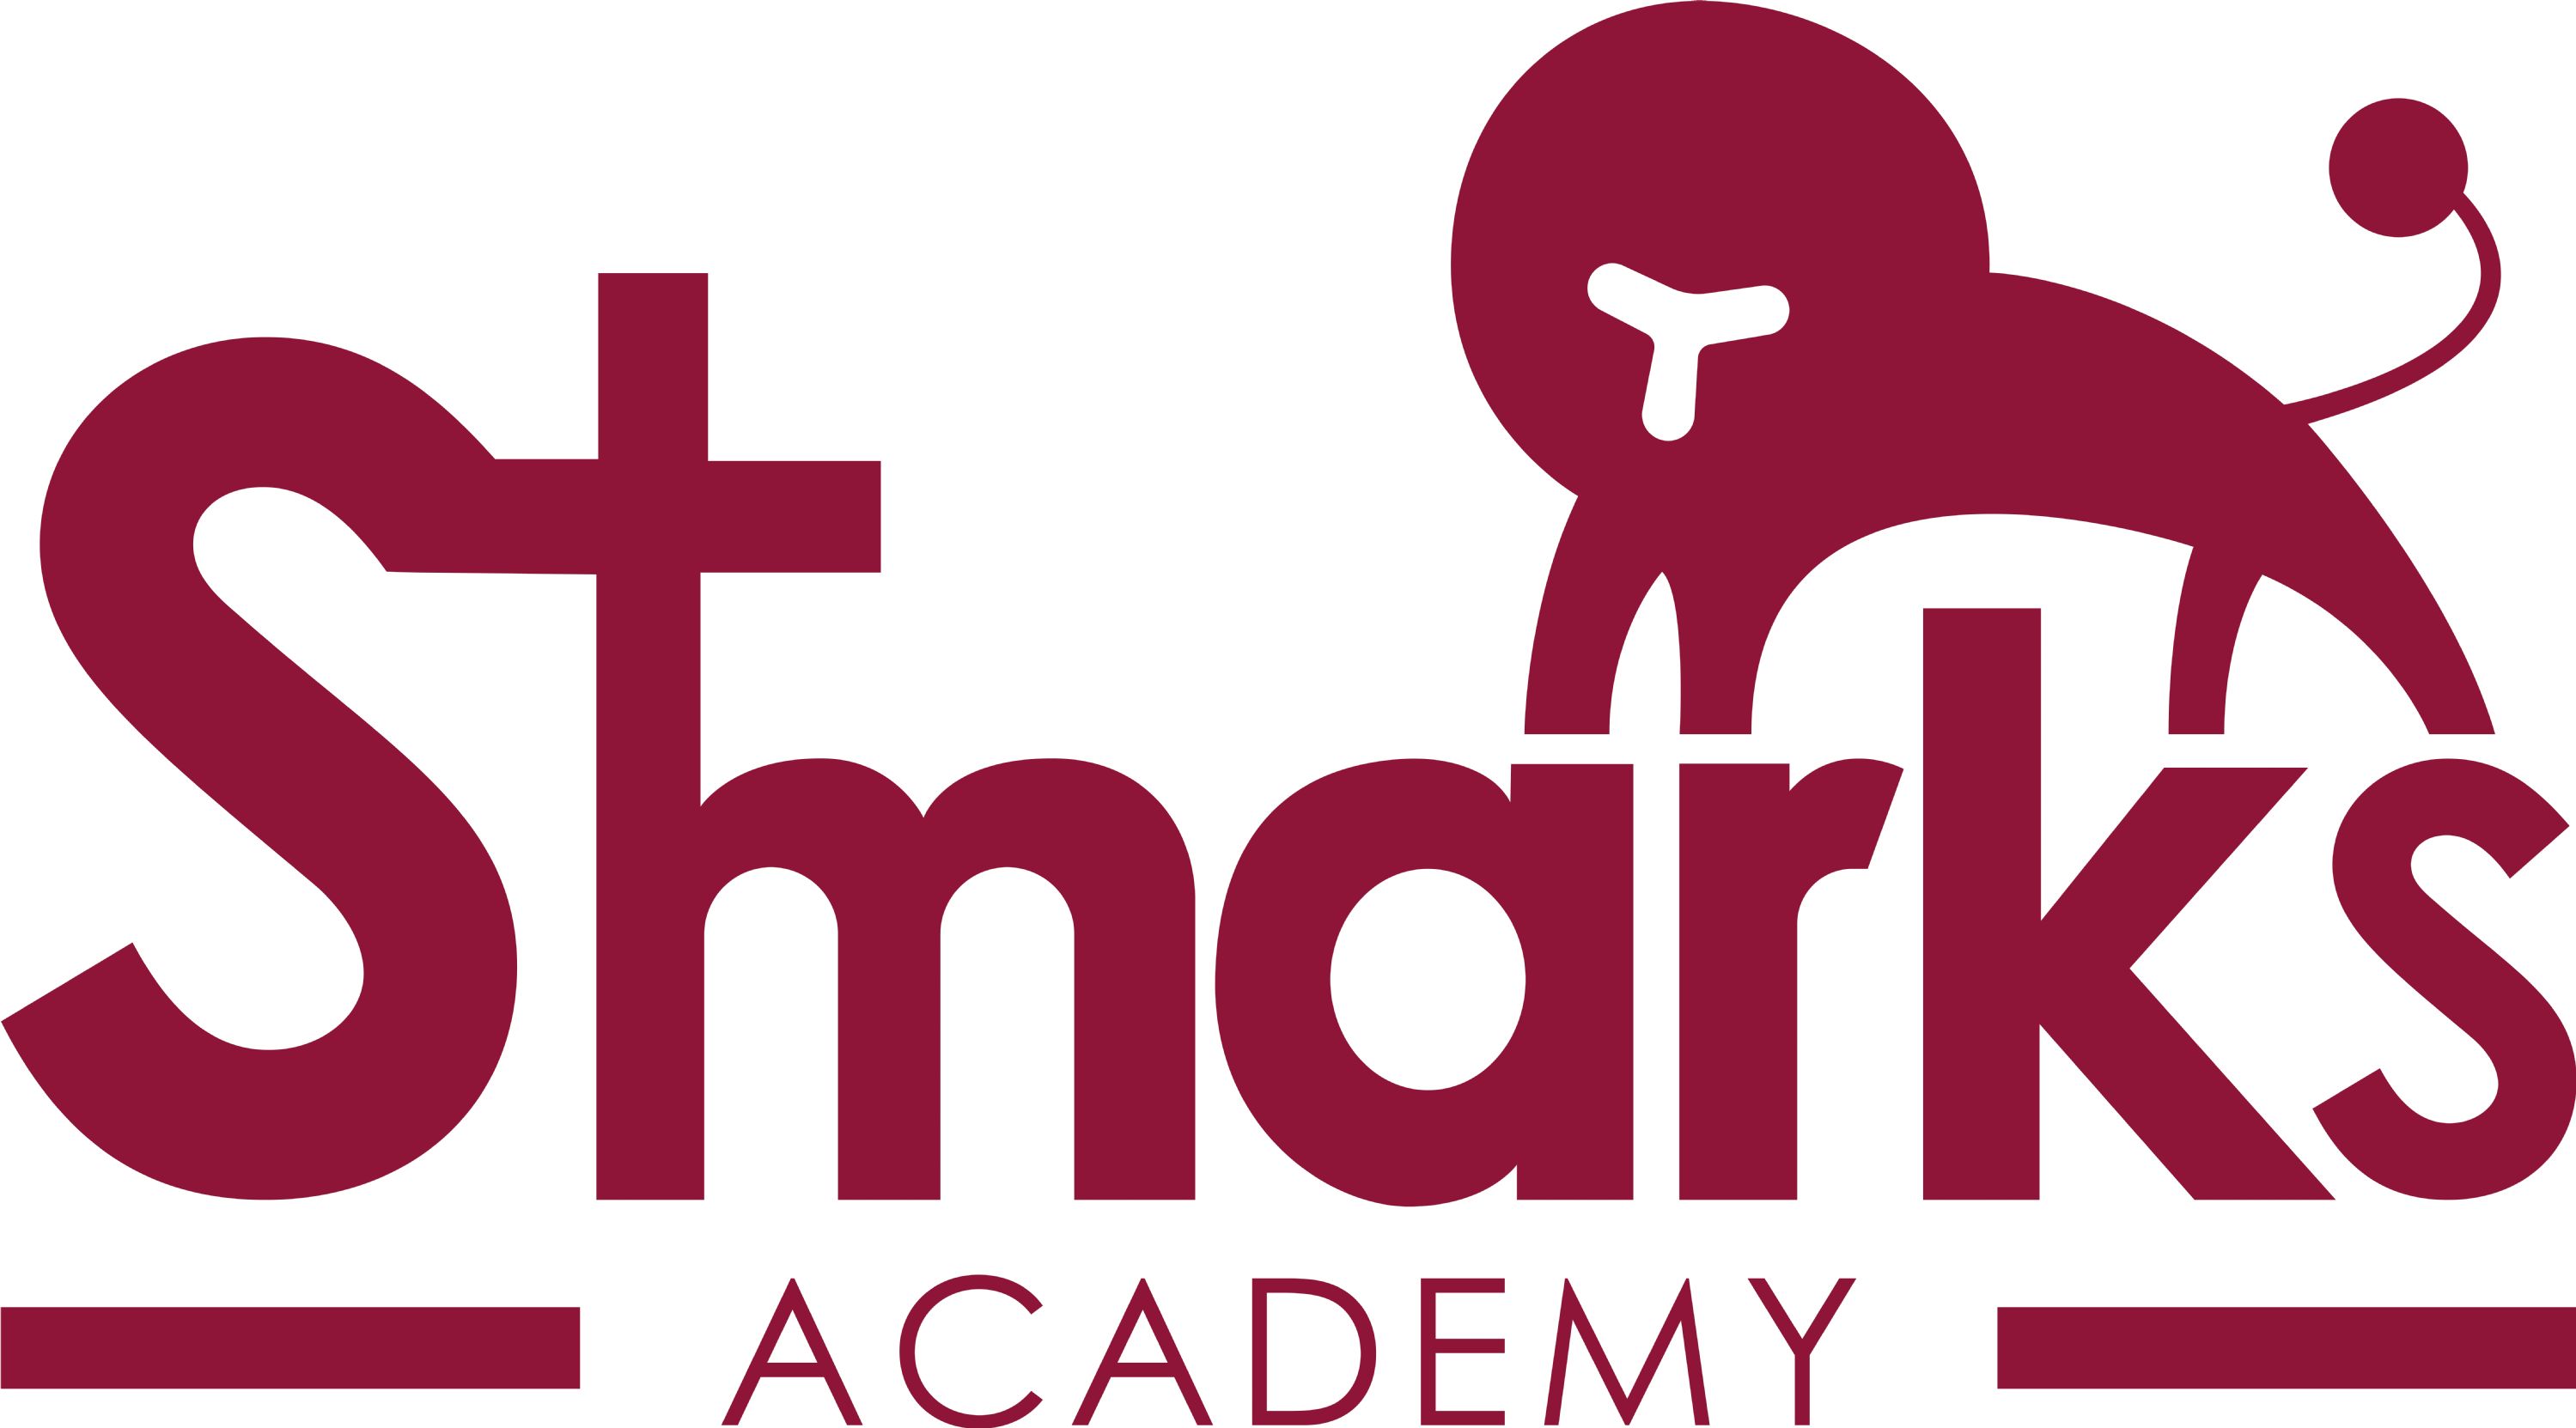 St Mark's Academy name